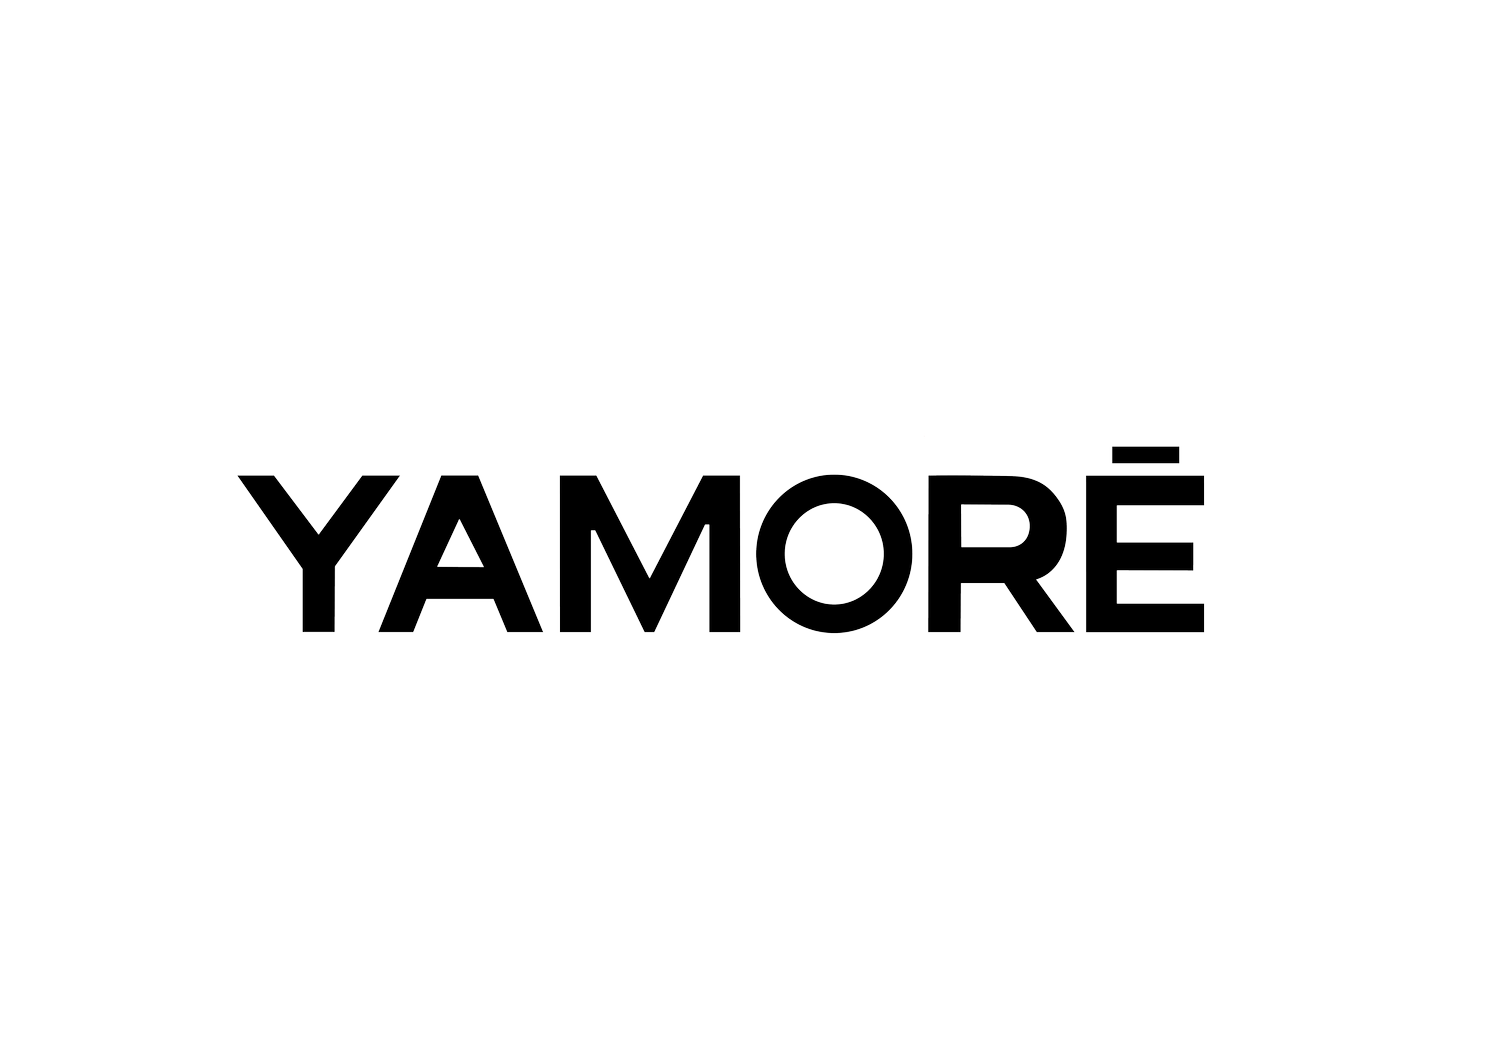 Yamorē